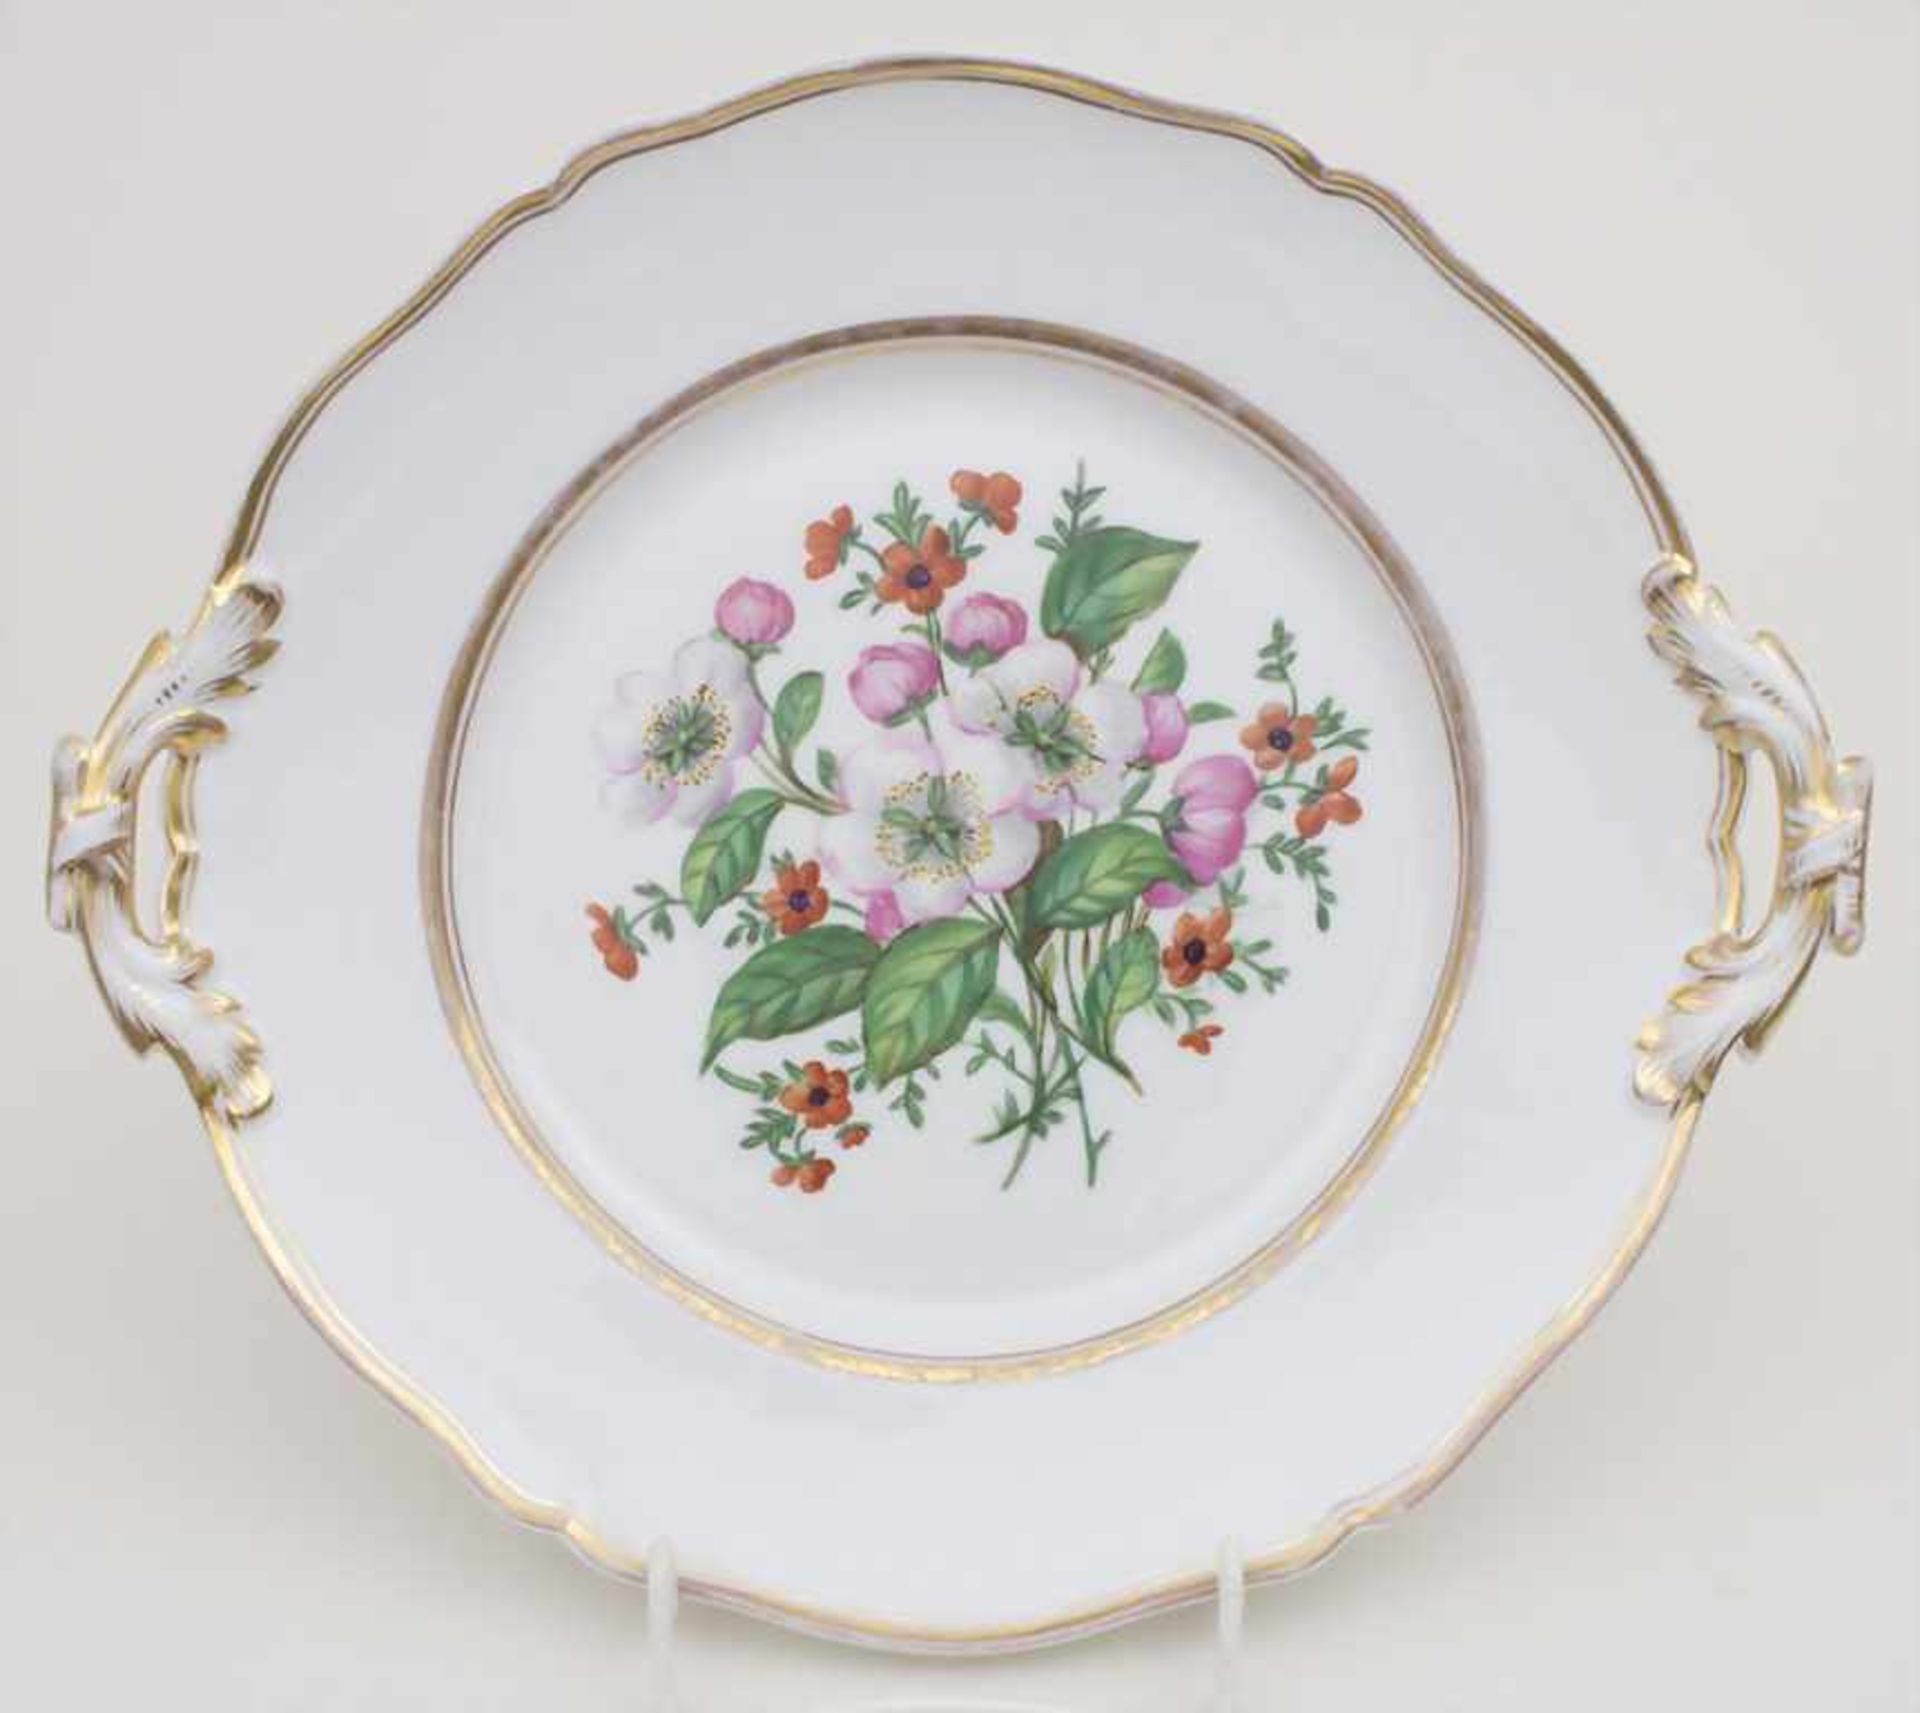 Prunkteller mit Blumenmalerei / A splendid plate with flowers, KPM/Berlin, 1849-1870Material: